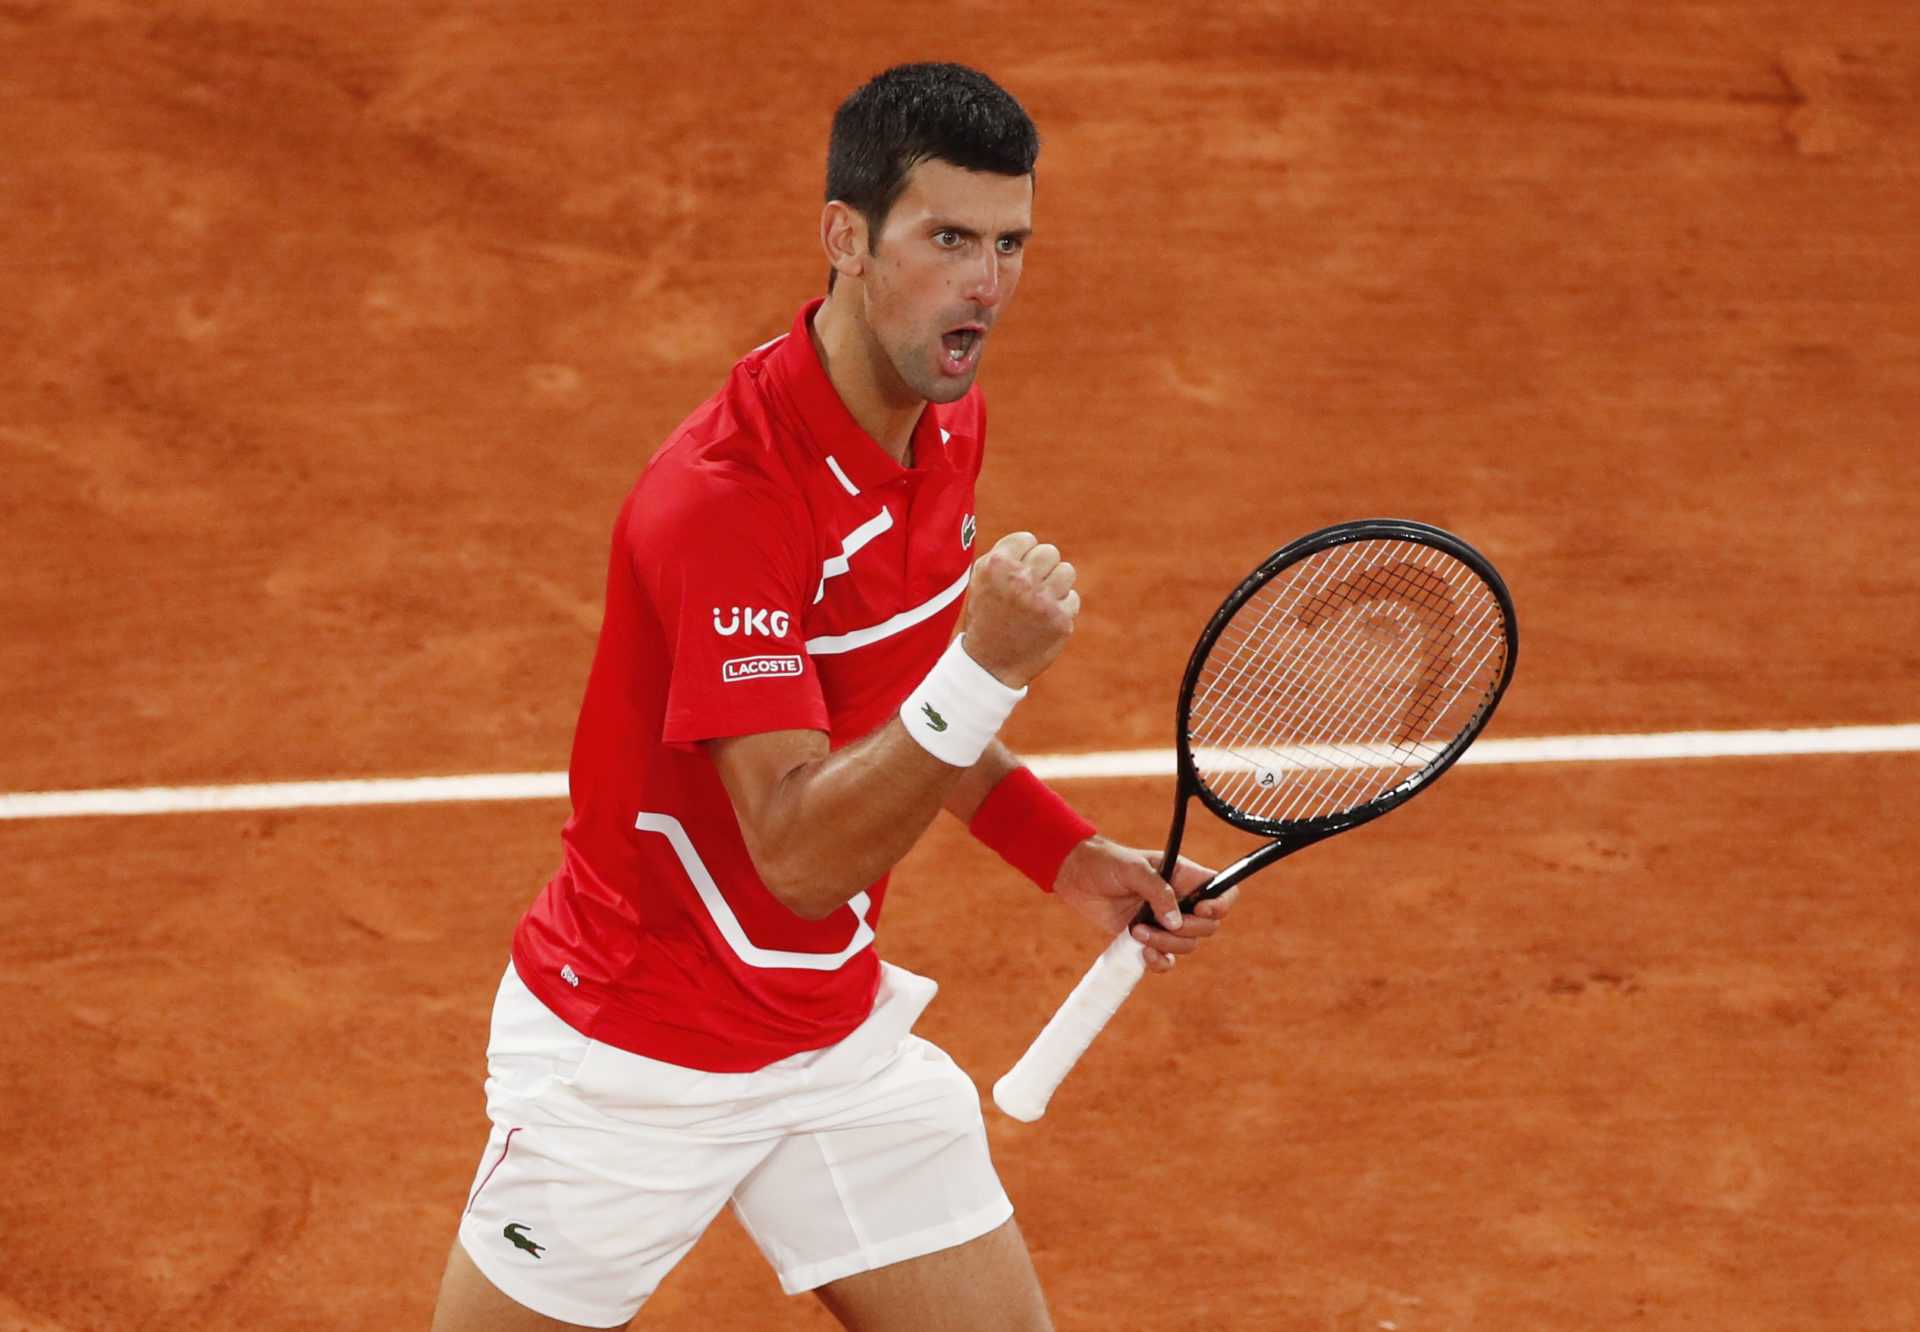 «Terminer fortement à l’O2»: l’ancien n ° 1 britannique a confiance en les chances de Novak Djokovic aux finales de l’ATP